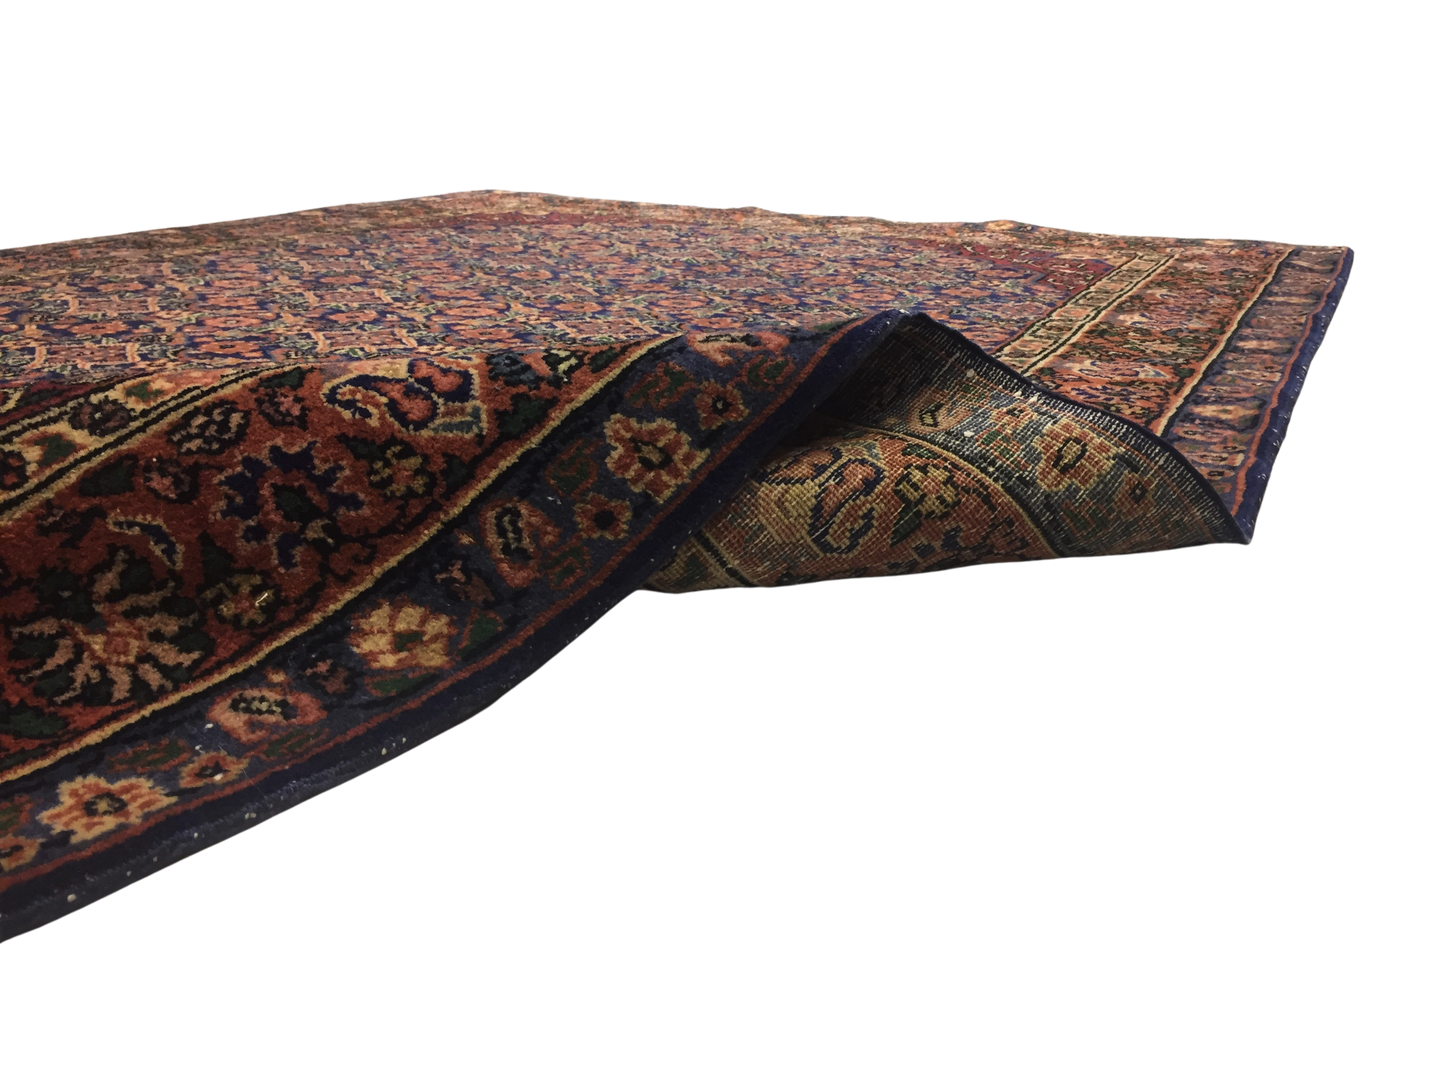 Classic Carpet 135 X 210 cm - Alfombras de Estambul -  Turkish Carpets - Alfombras de Estambul